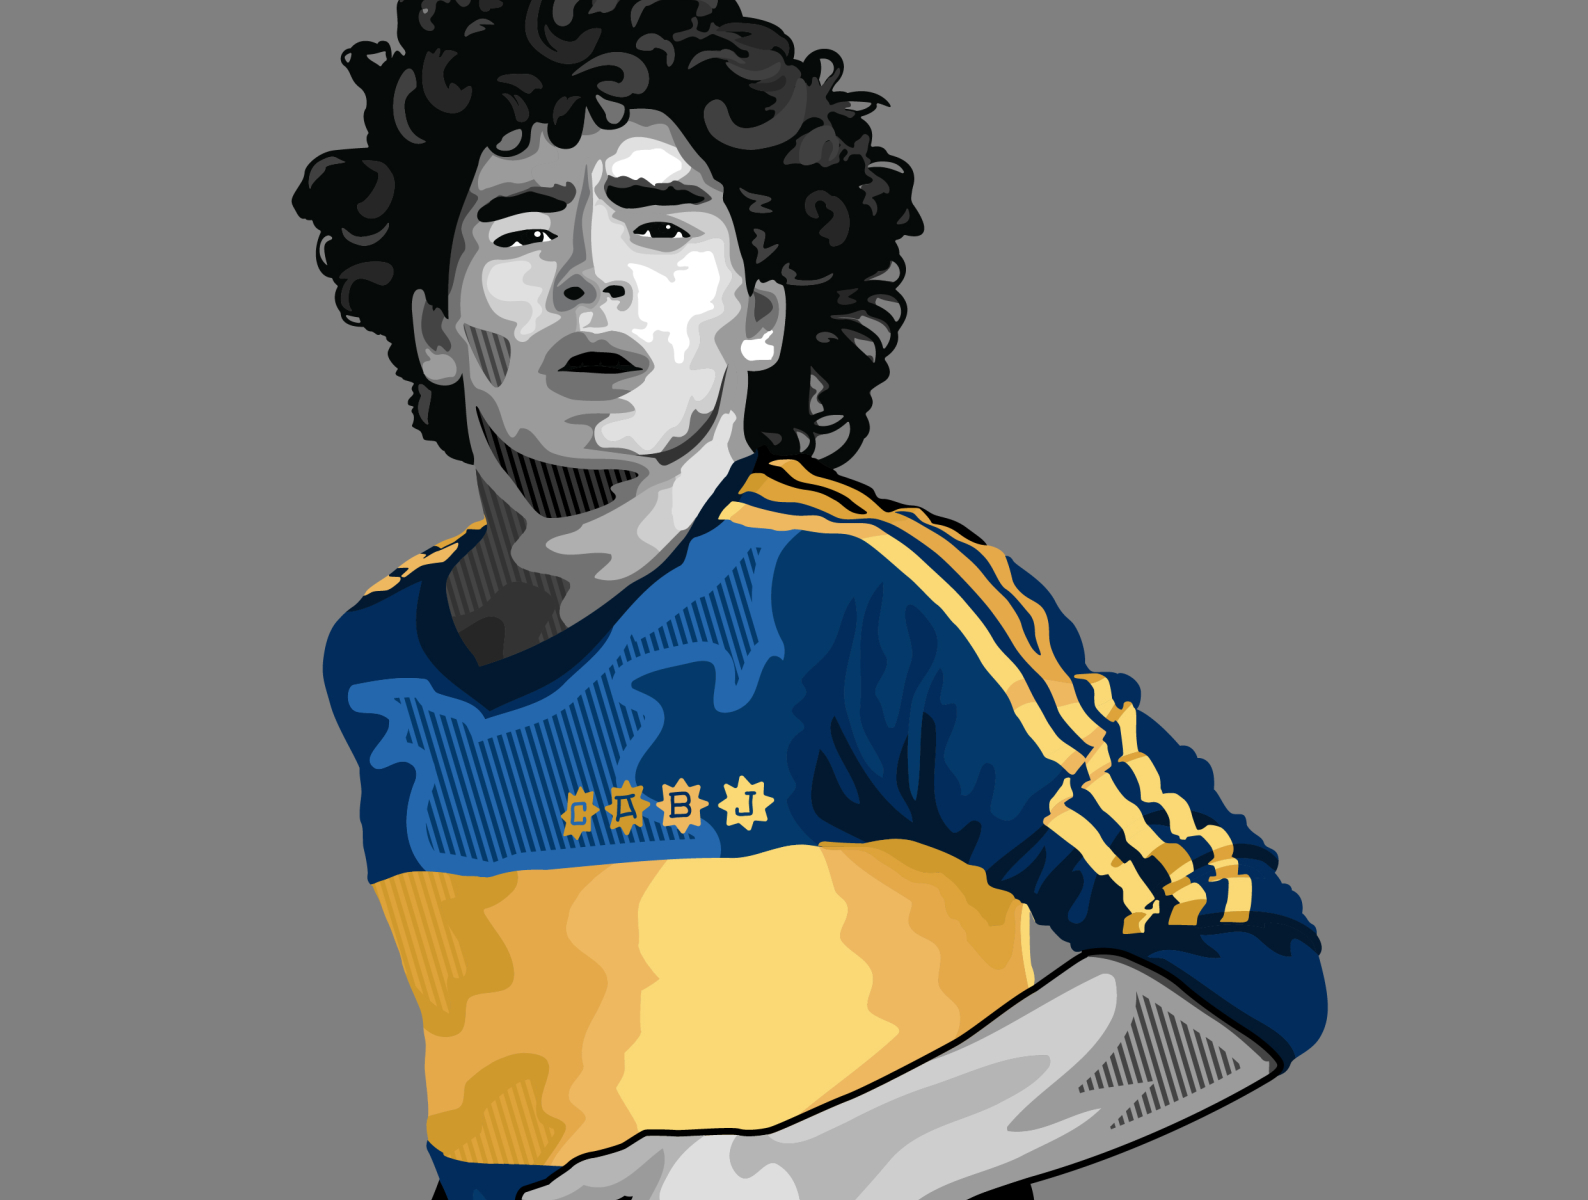 Diego Armando Maradona vectorial by Pablo Gabriel Rubino on Dribbble